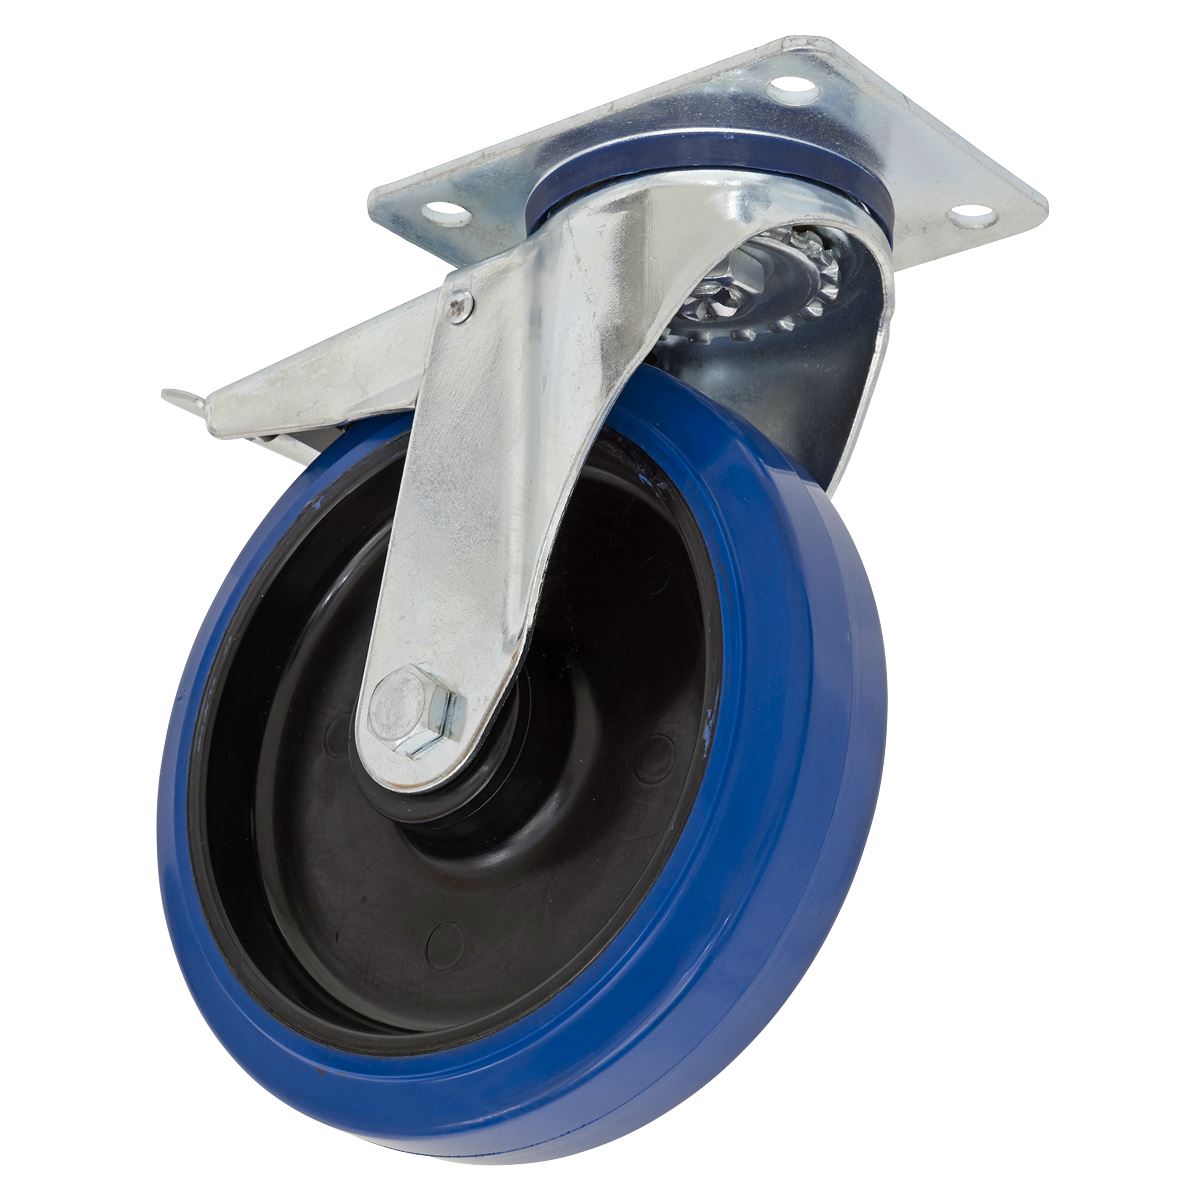 Sealey Heavy-Duty Blue Elastic Rubber Castor Wheel Swivel with Total Lock Ø160mm - Trade